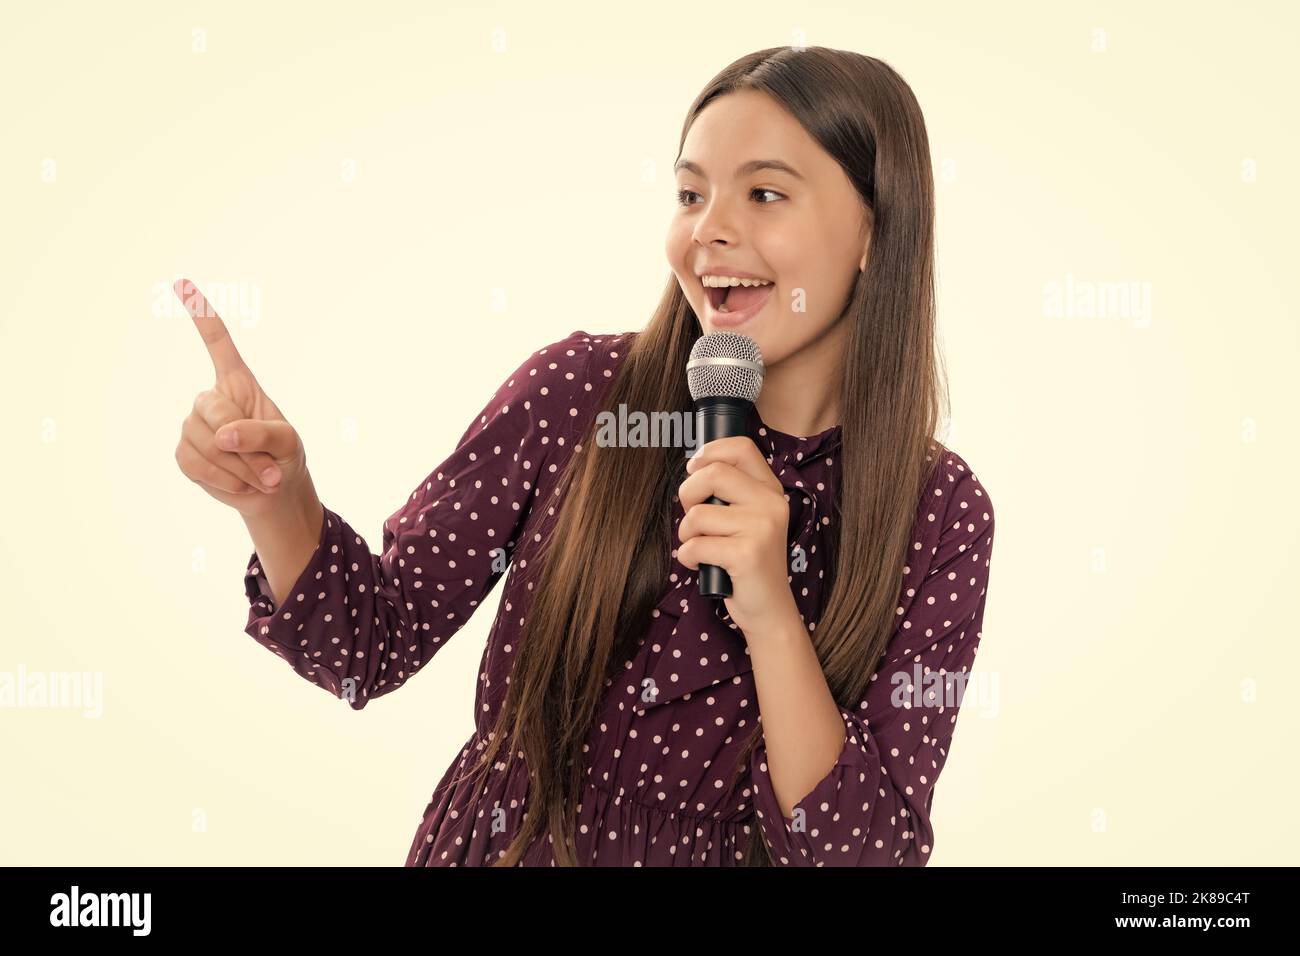 Hübsches kleines Mädchen, das mit dem Mikrofon singt. Porträt der emotionalen erstaunt aufgeregt Teenager-Mädchen. Stockfoto